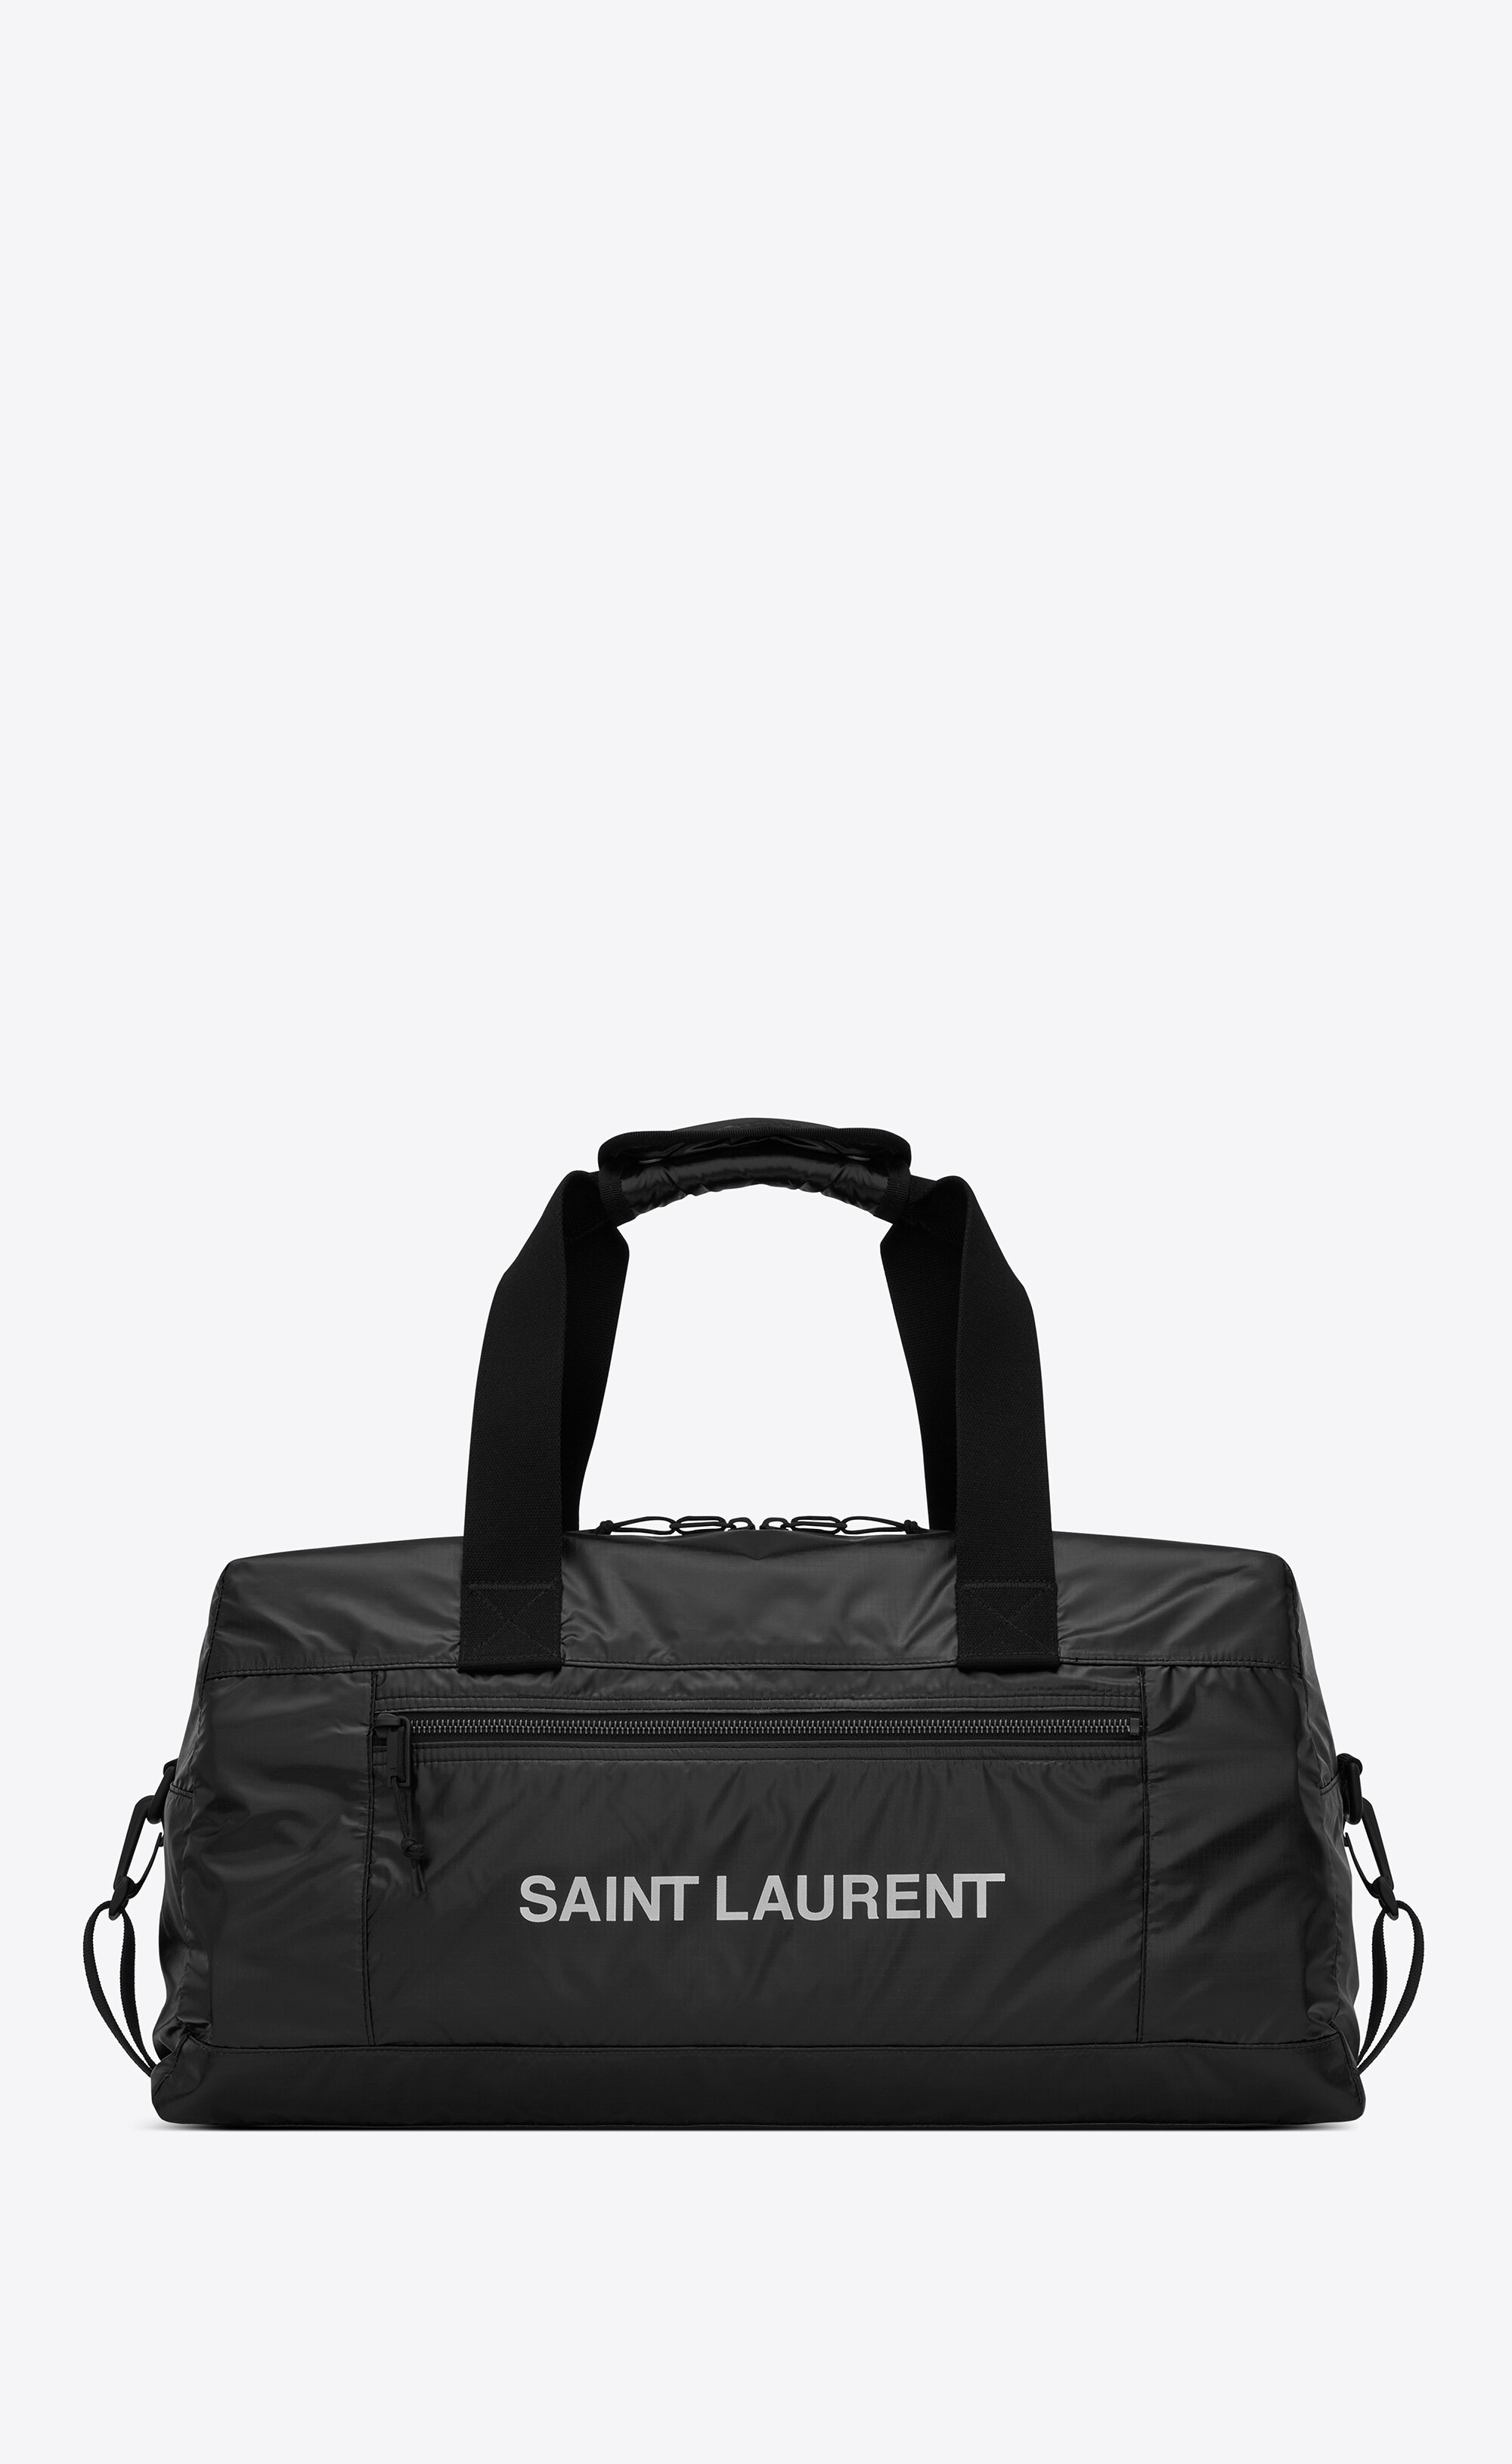 Nuxx duffle sac en nylon Synthétique Saint Laurent pour homme en coloris Noir Homme Sacs Sacs de sport 